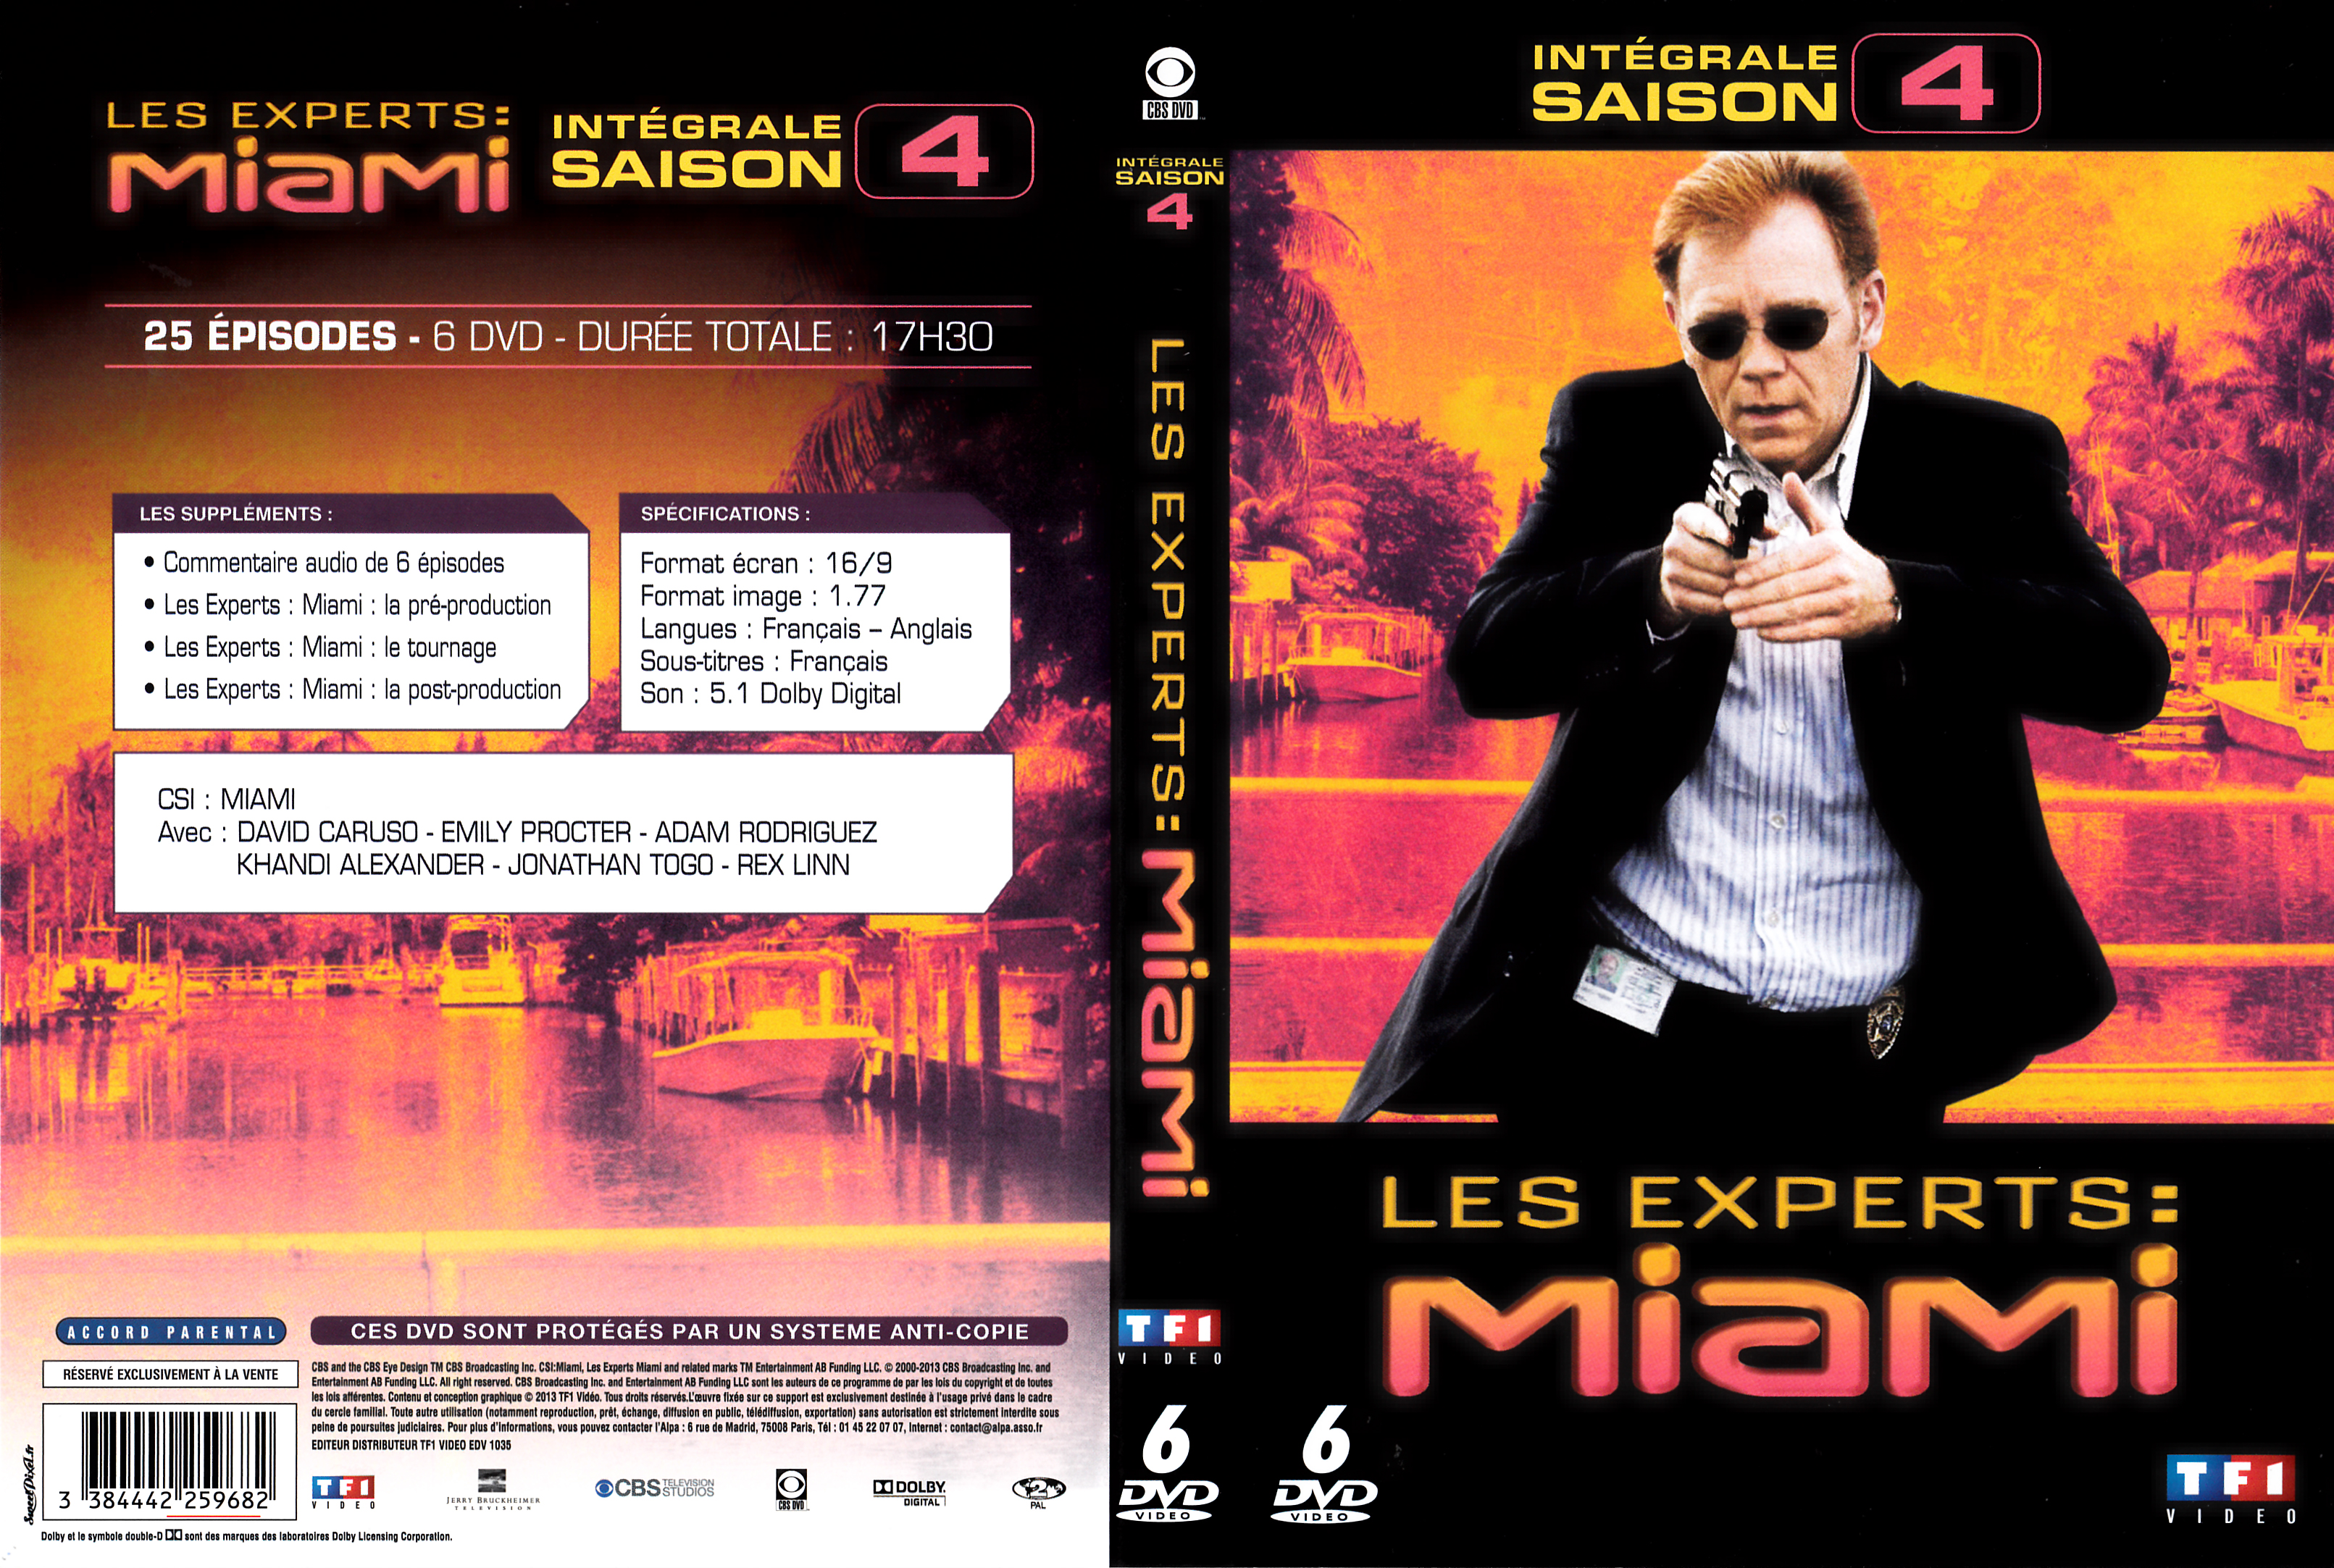 Jaquette DVD Les experts Miami Saison 04 COFFRET v2